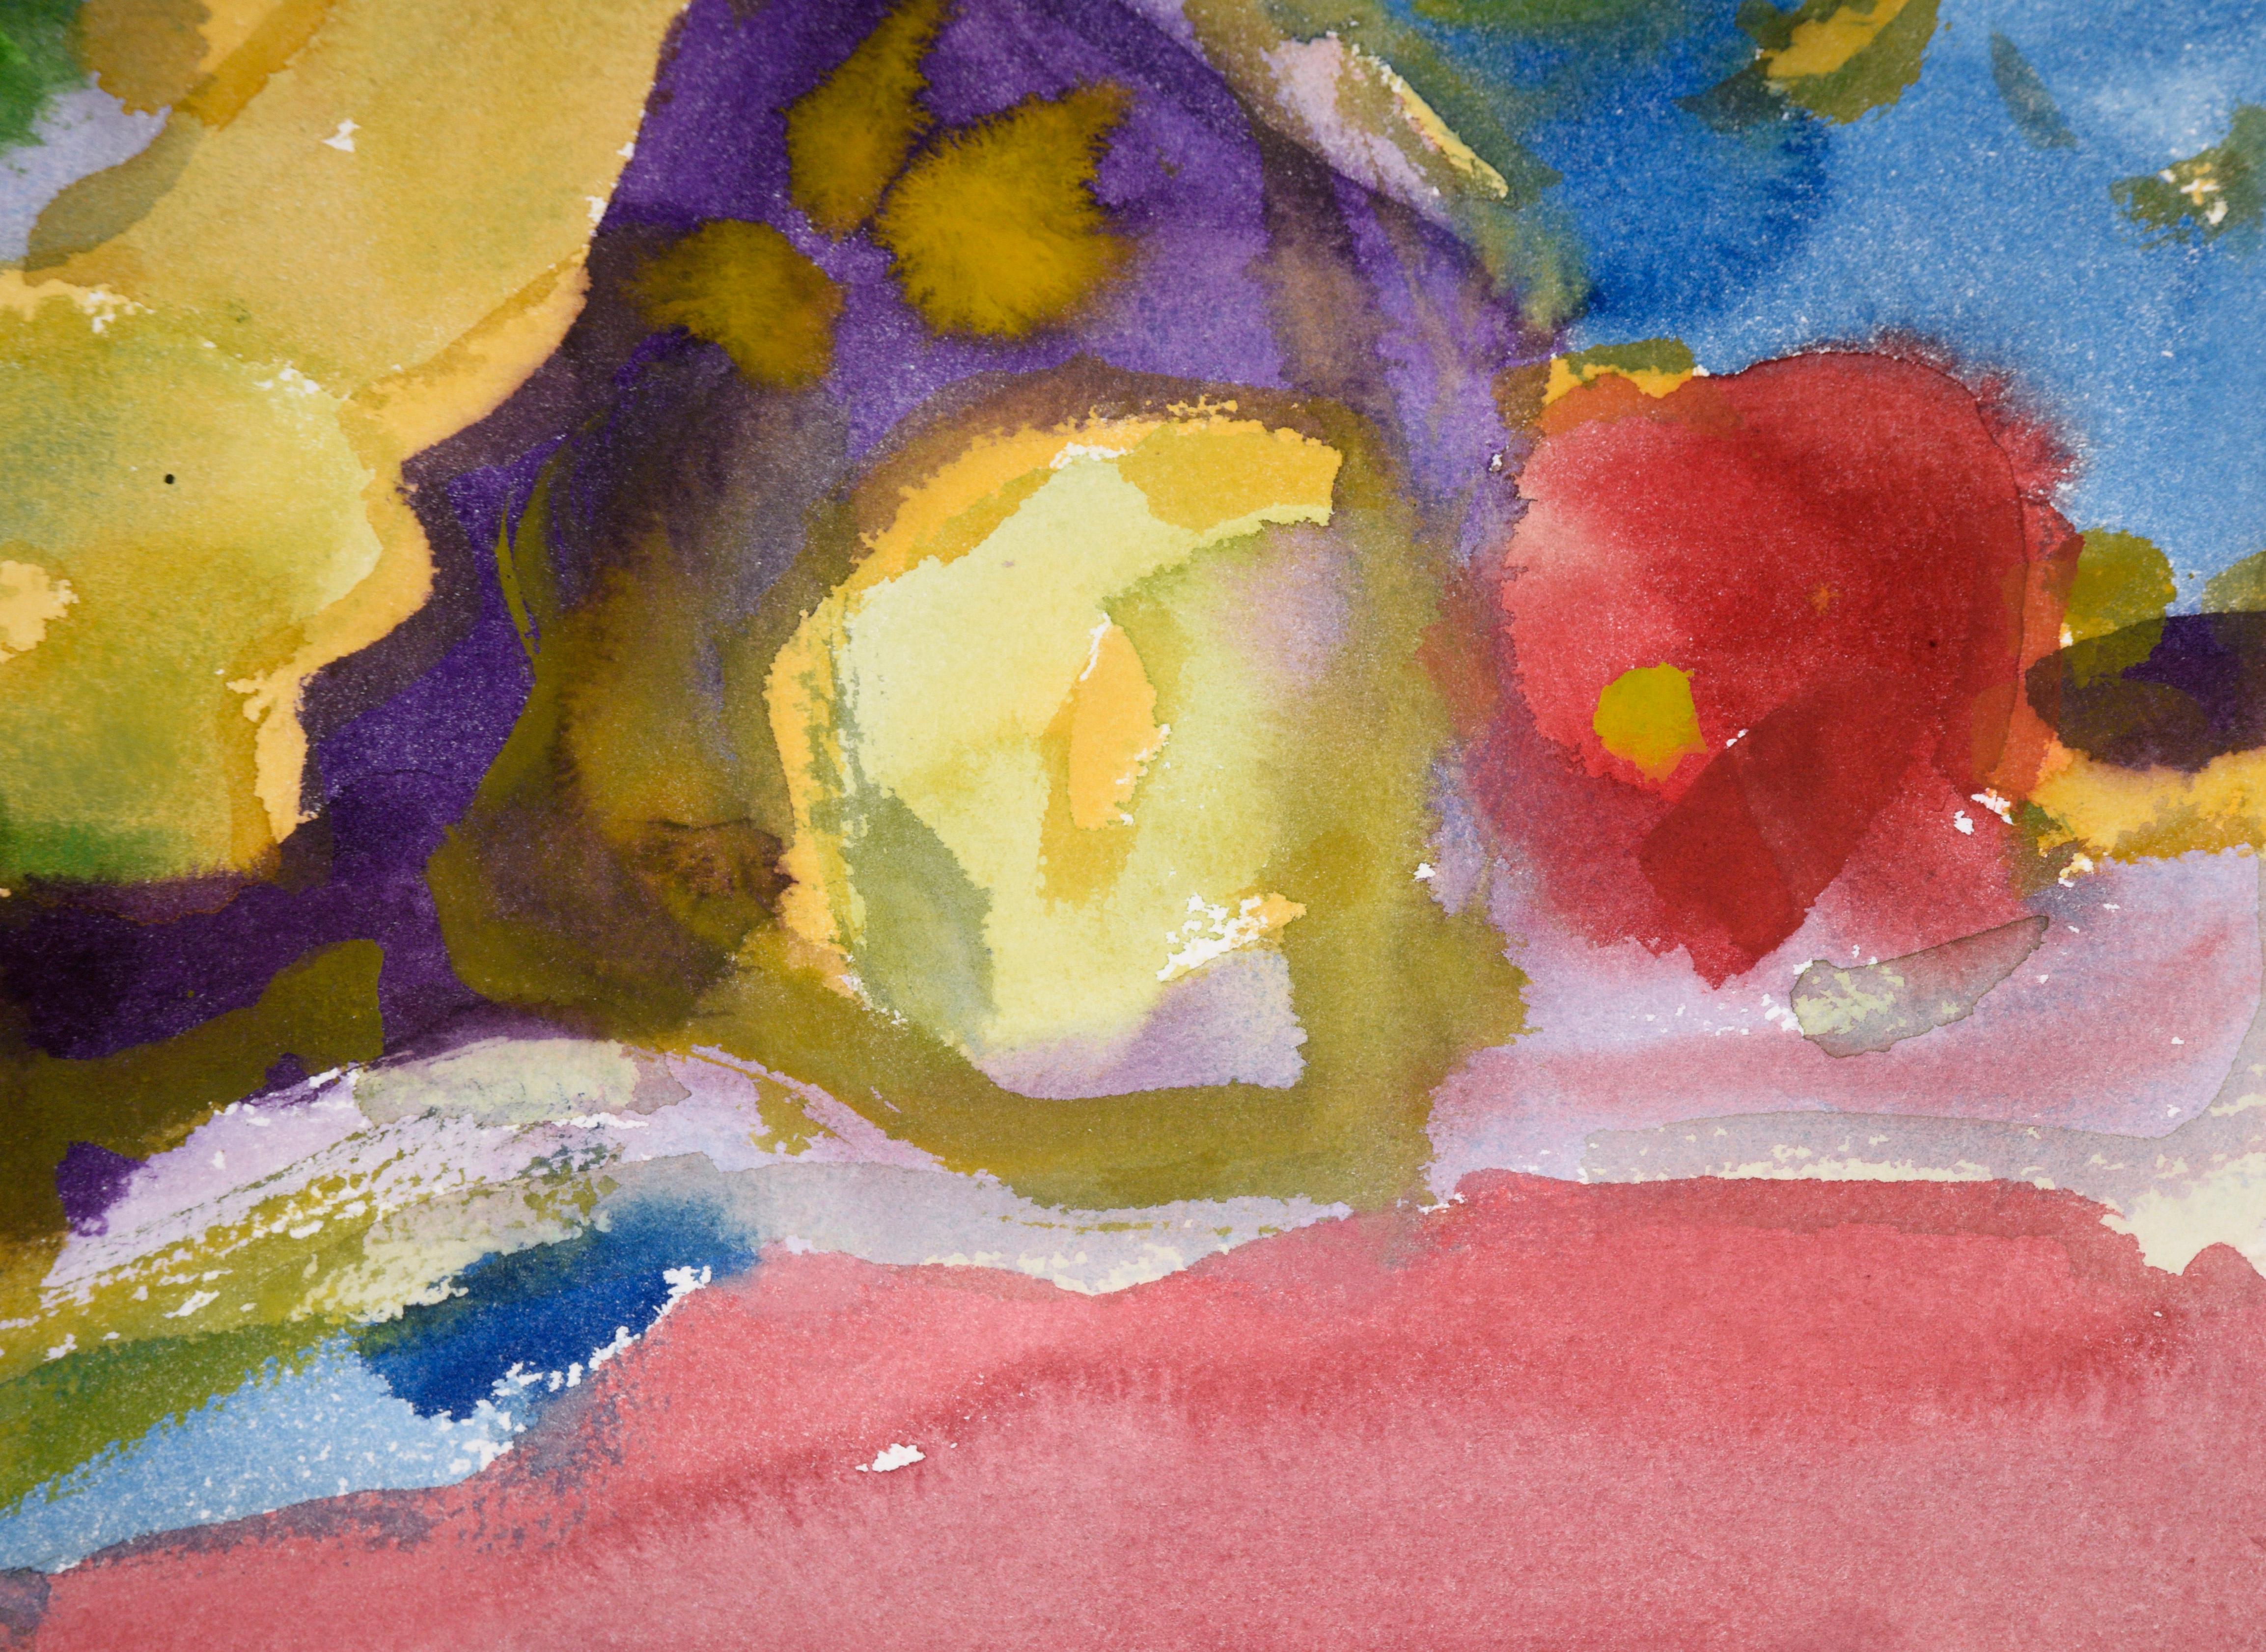 Nature morte abstraite avec fruits à l'aquarelle sur papier

Nature morte colorée avec des fruits de Les (Leslie Luverne) Anderson (américain, 1928-2009). Plusieurs fruits semblent posés sur une table recouverte d'une nappe violette. La scène est